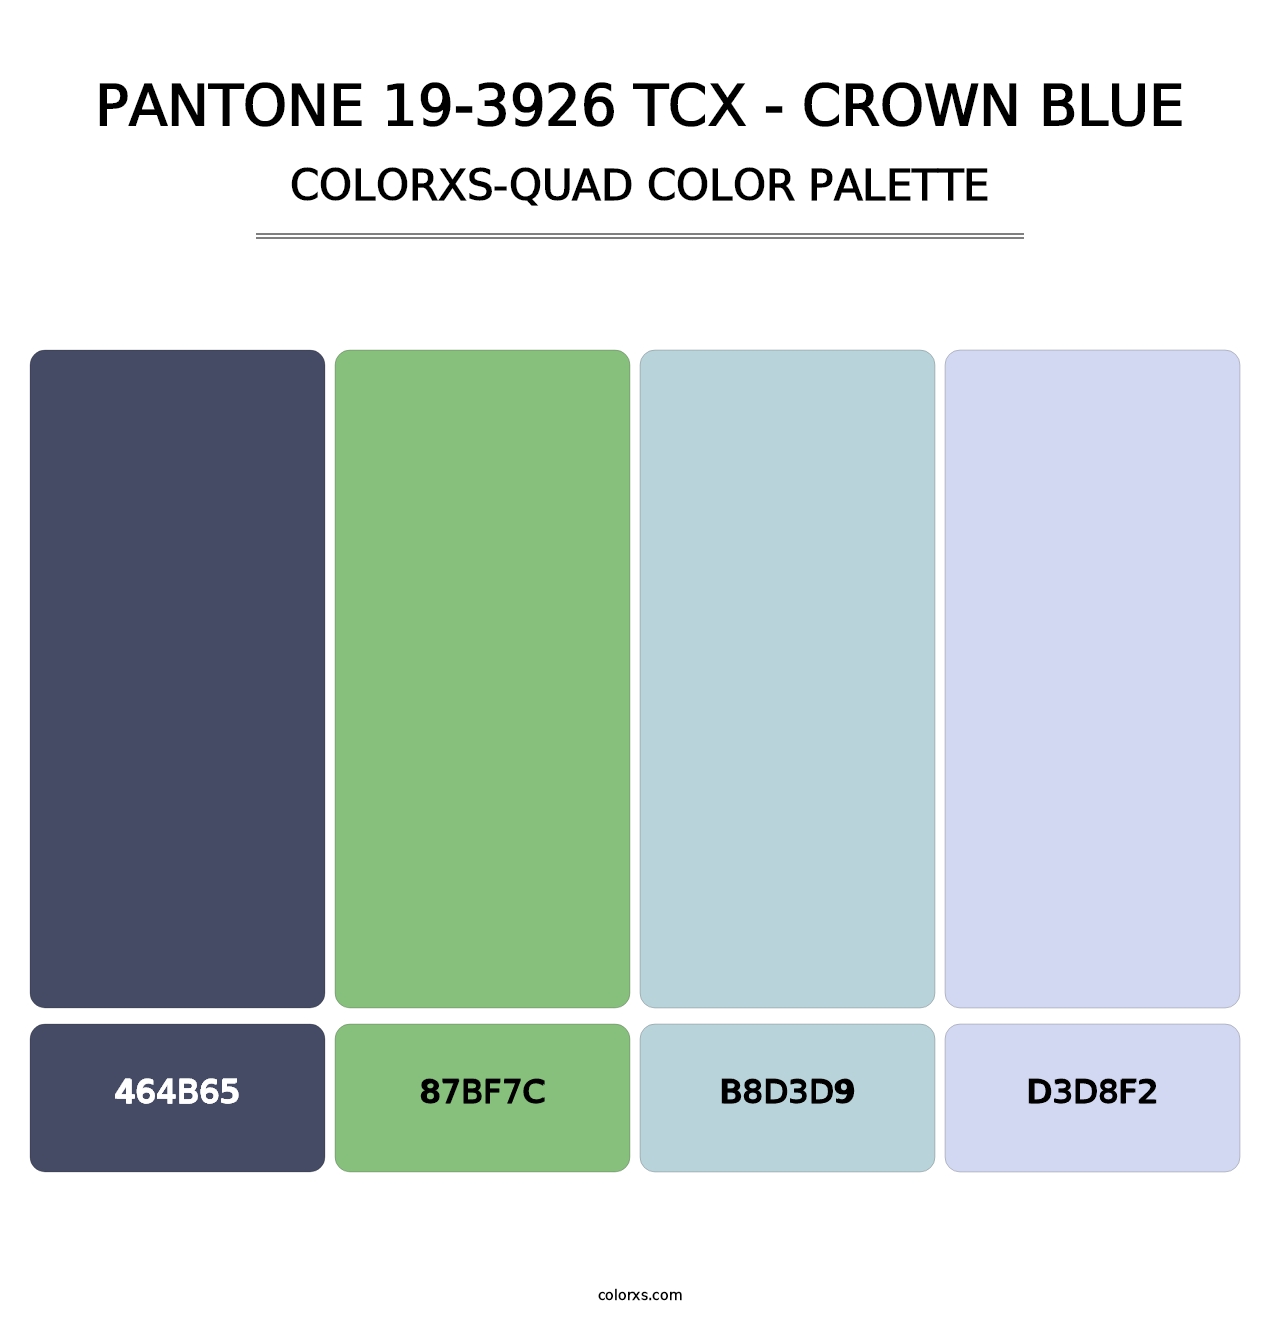 PANTONE 19-3926 TCX - Crown Blue - Colorxs Quad Palette